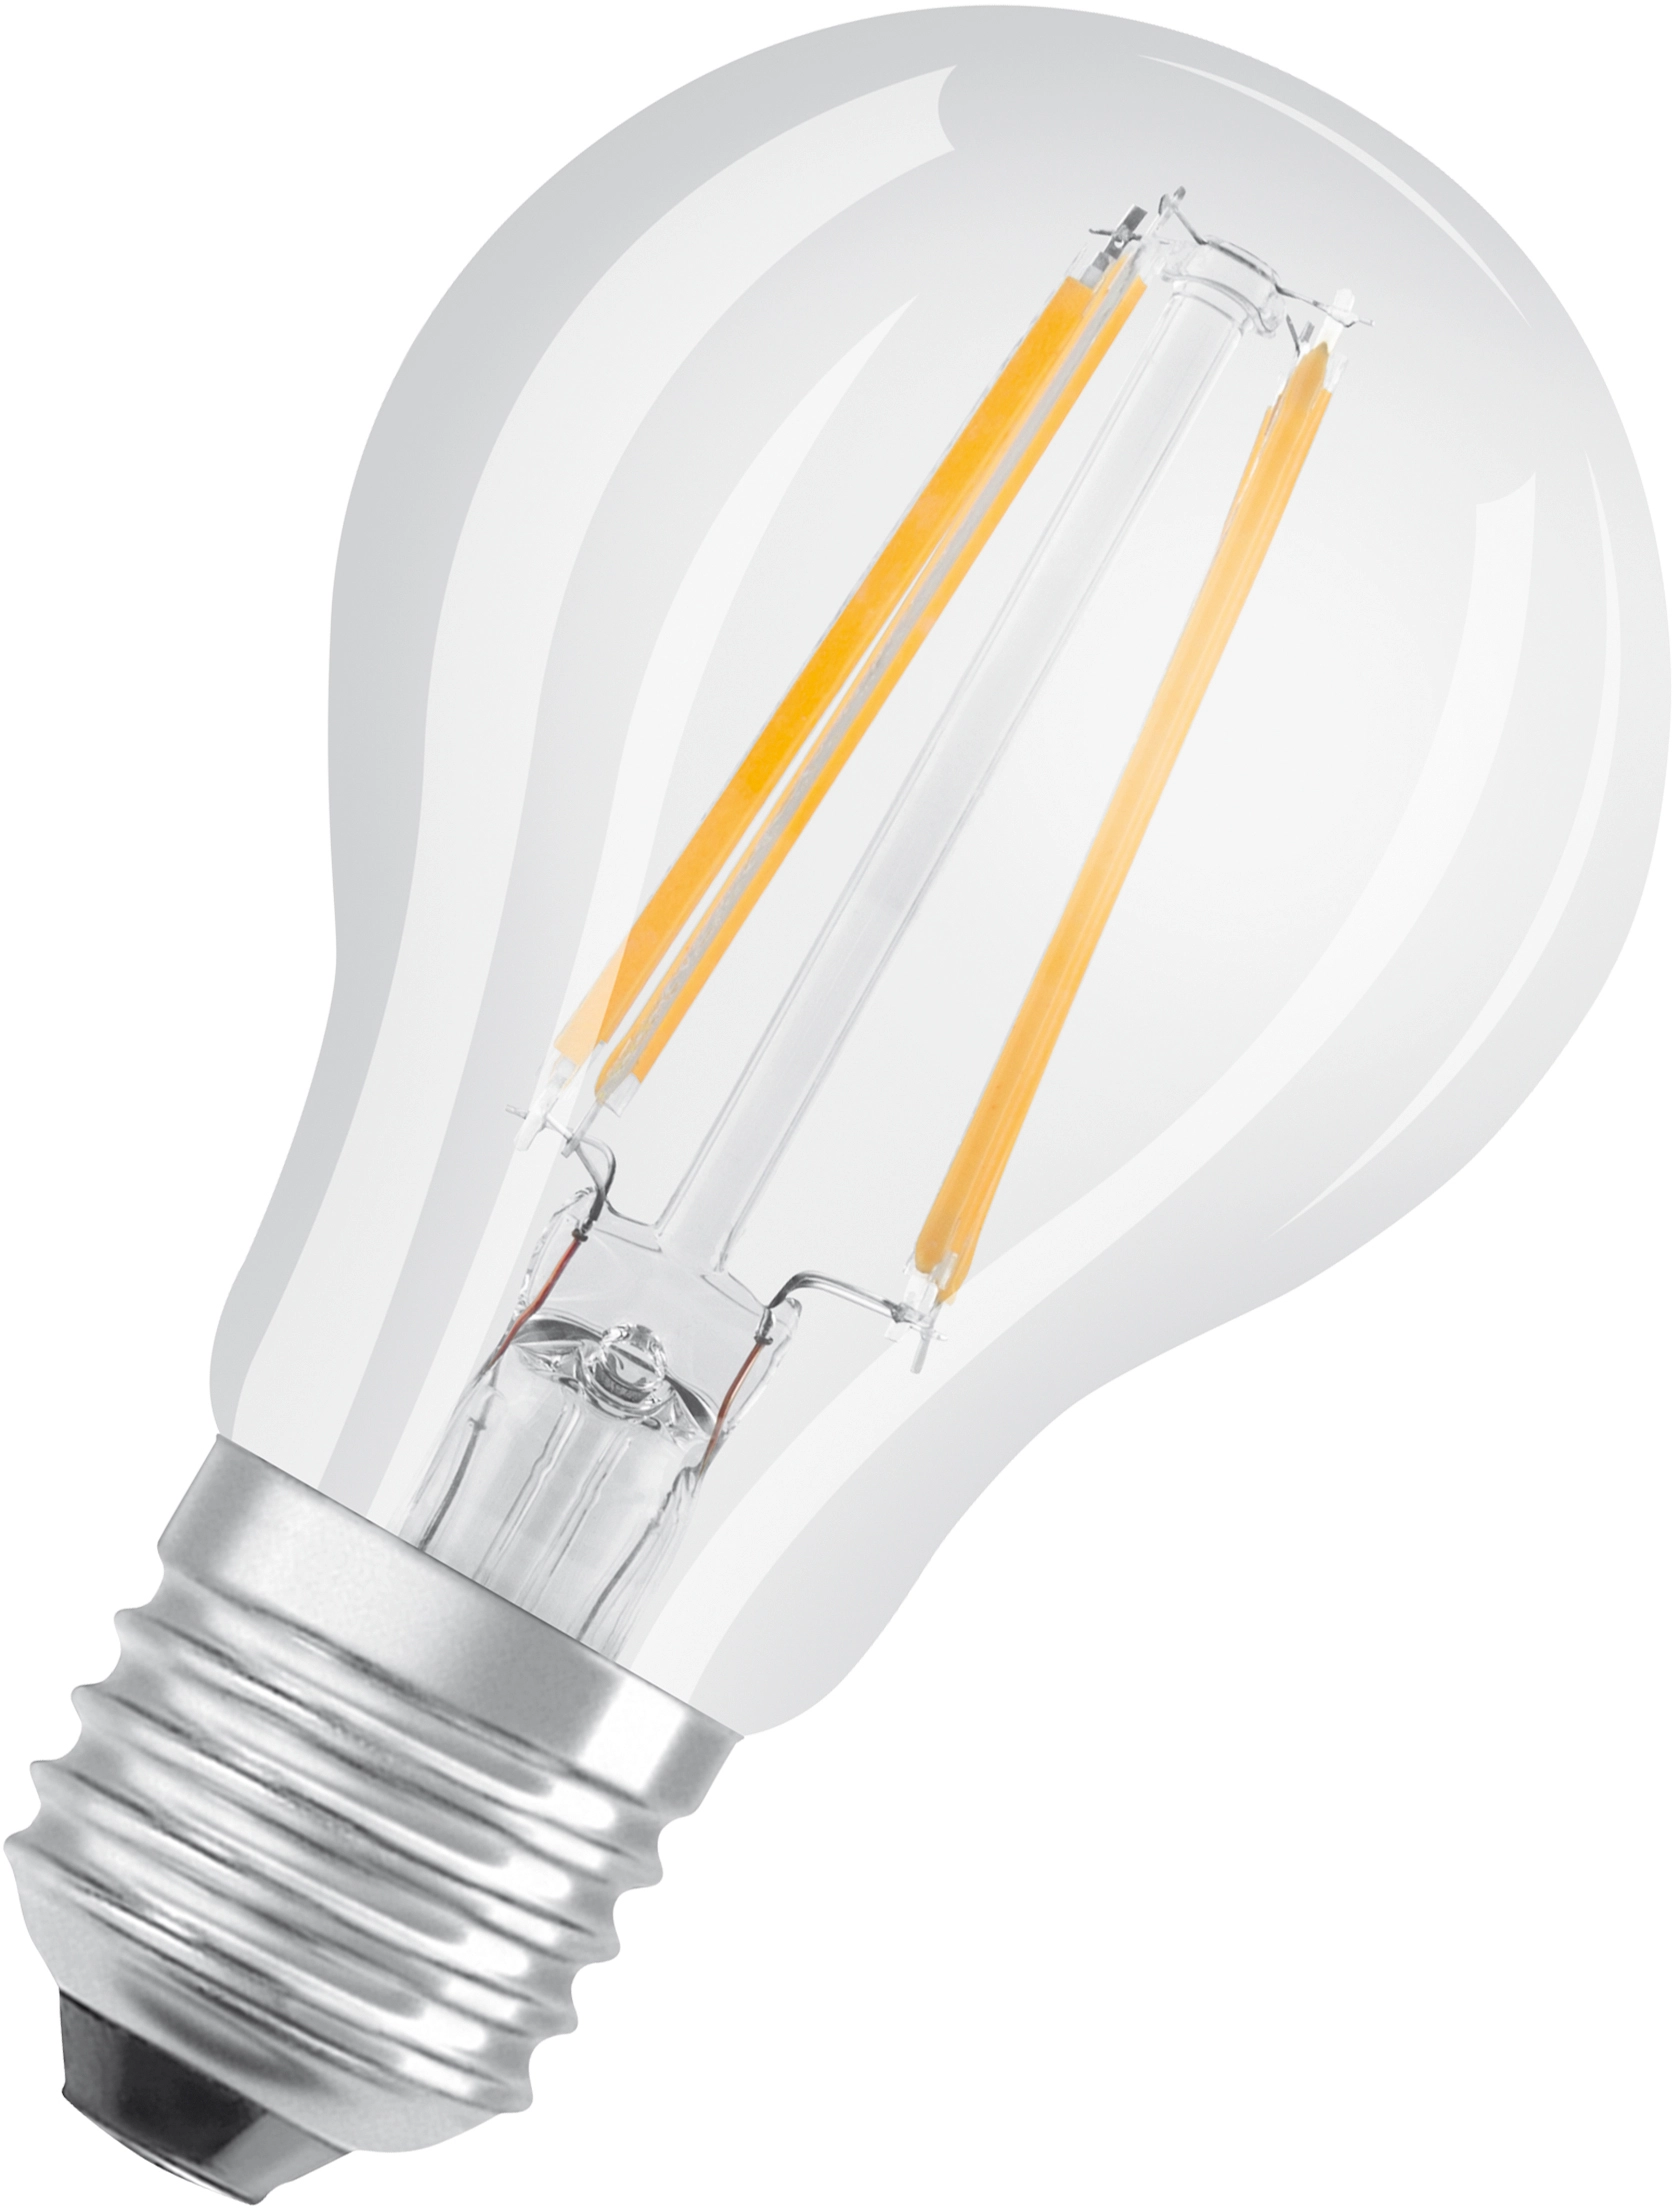 Bellalux Ampoule LED forme classique filament E27 Blanc chaud 40